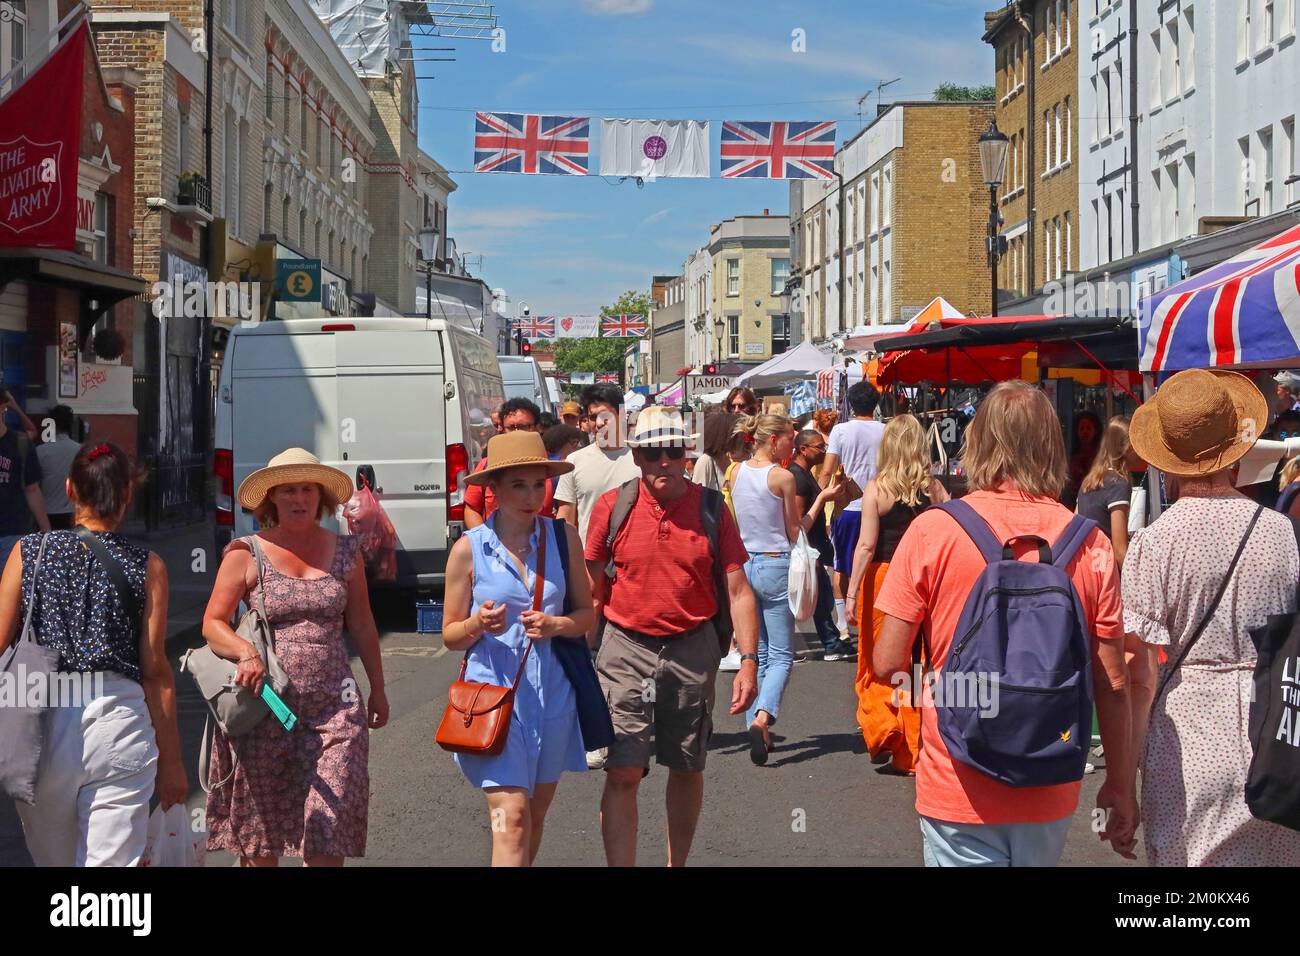 Samedi d'été, marché de Portobello Road, Notting Hill, Londres, Angleterre, Royaume-Uni, W11 1LA Banque D'Images